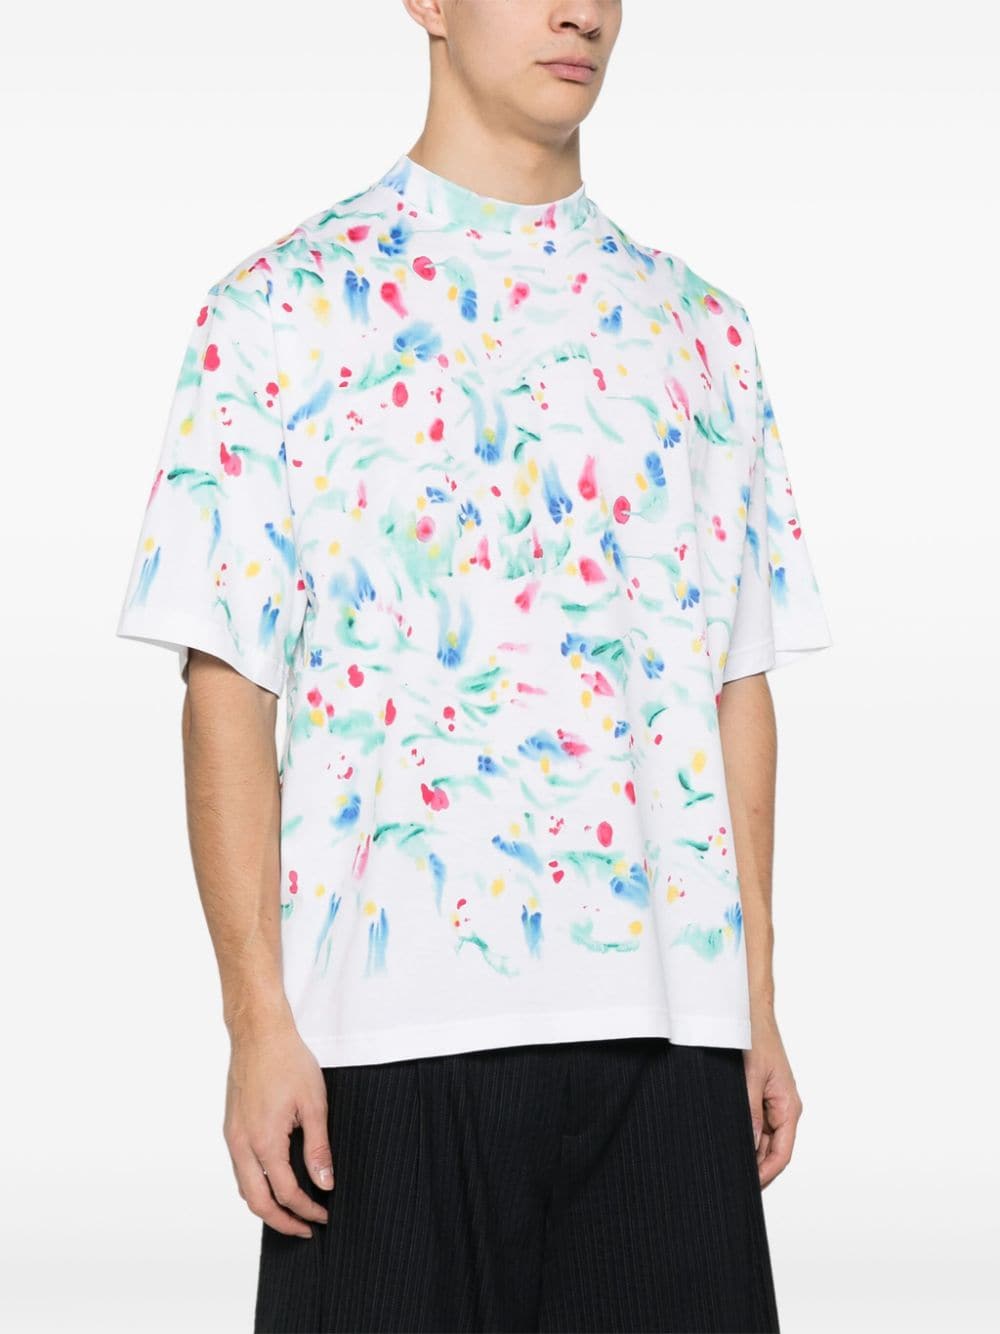 Paint-splatter cotton T-shirt<BR/><BR/><BR/>